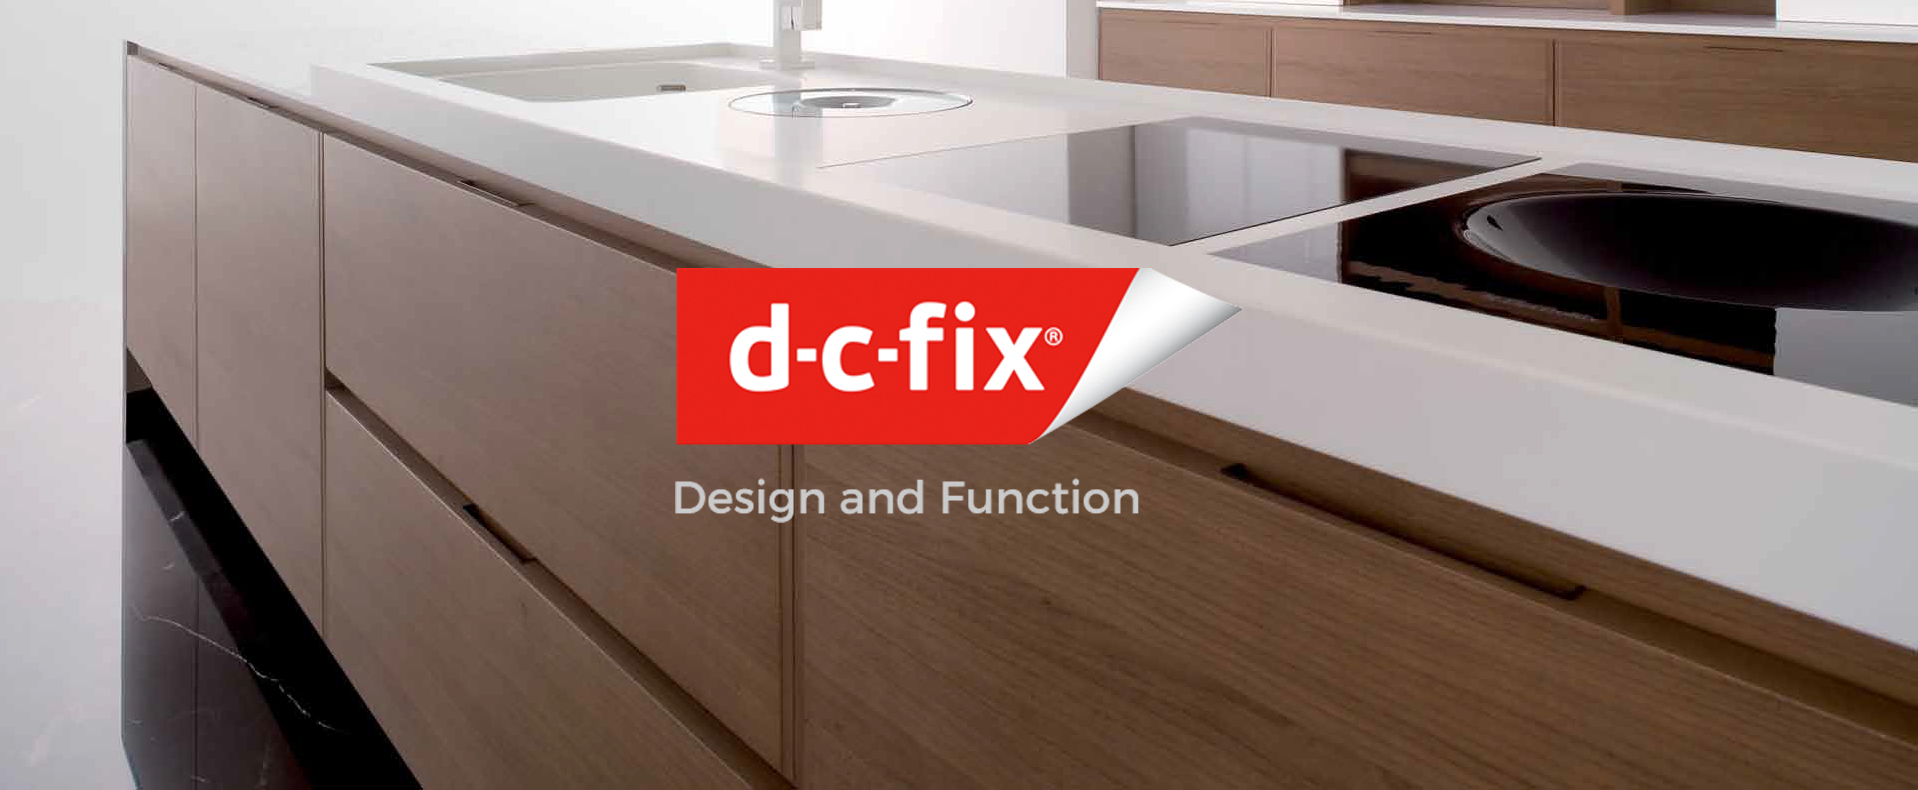 d-c-fix Branding - Housewares Website